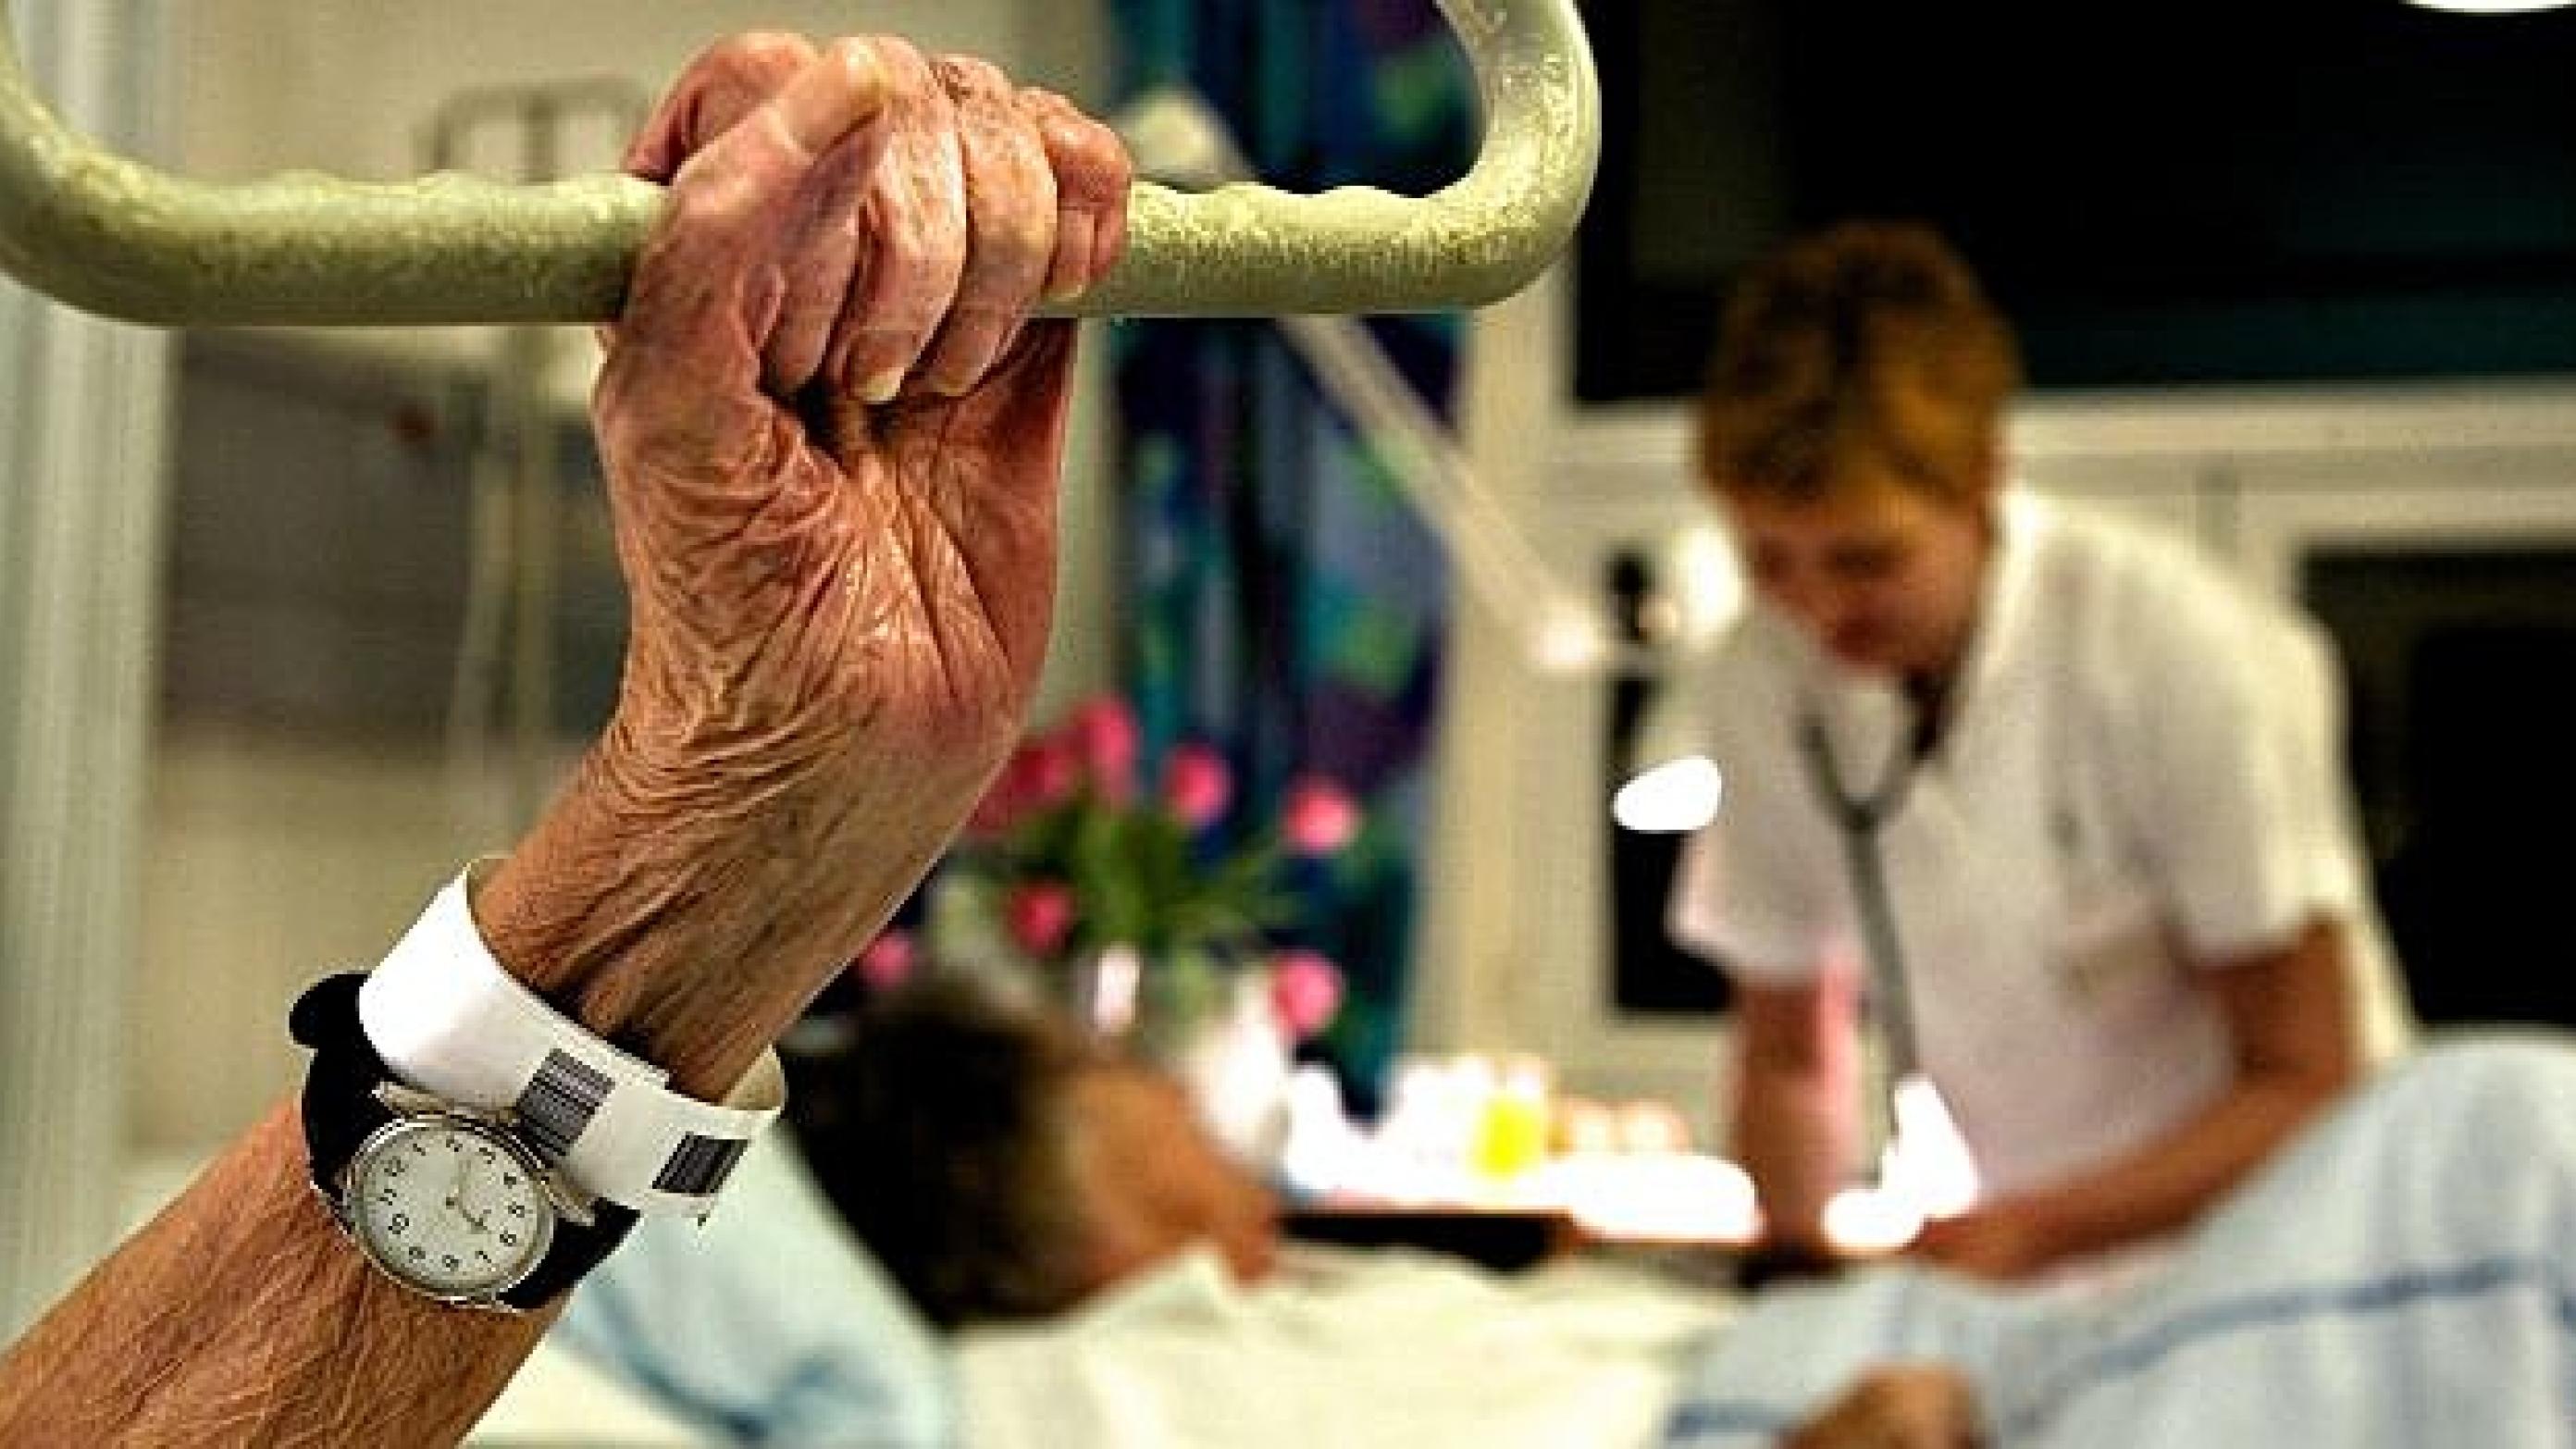 På Herlev og Gentofte Hospital er der gode erfaringer med at følge ældre og svækkede patienter hjem. Foto: Scanpix/Søren Bidstrup